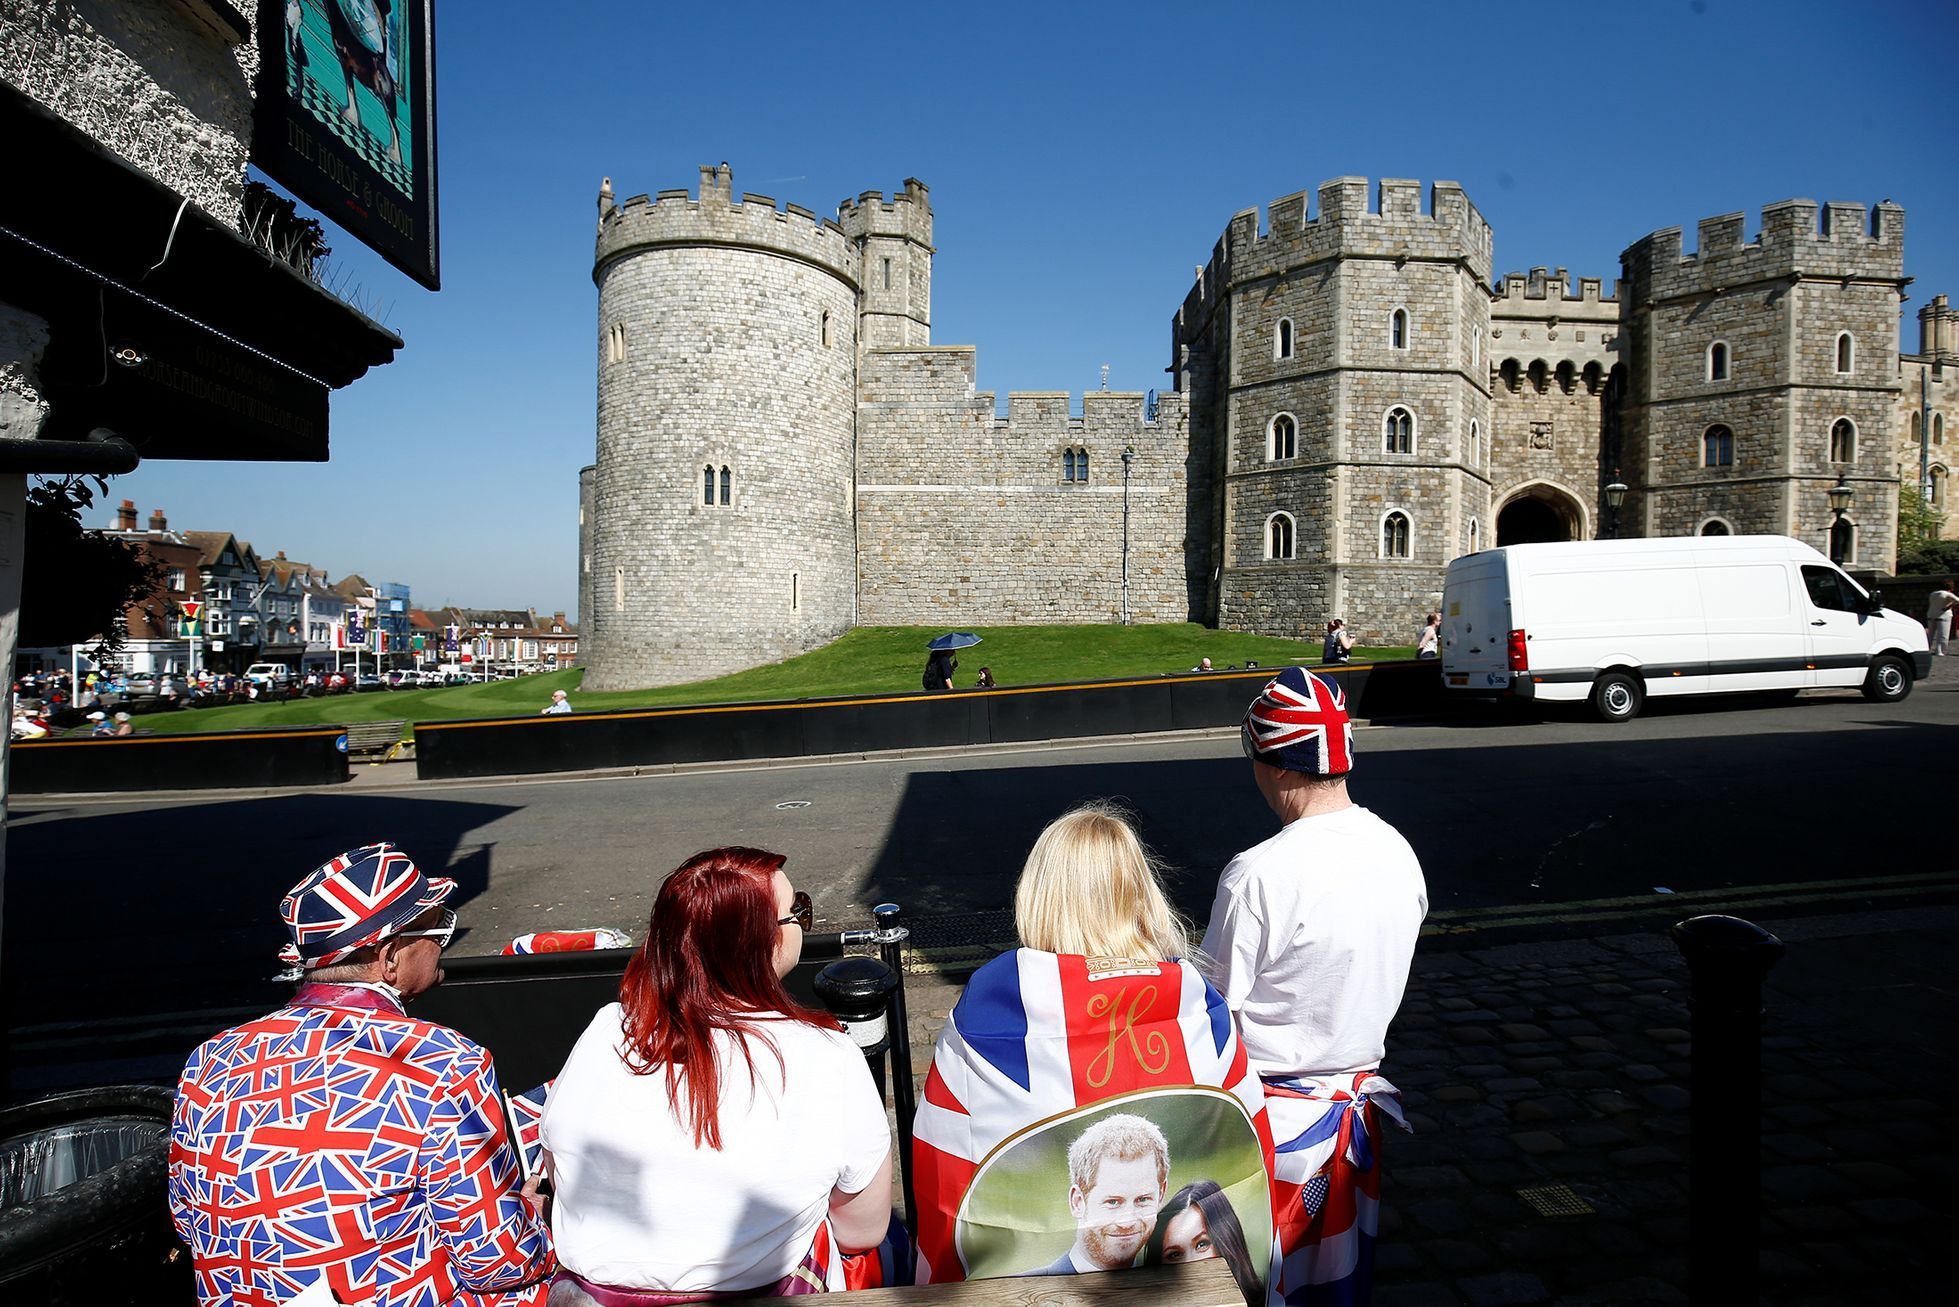 FOTOGALERIE / Přípravy na královskou svatbu / Princ Harry a Meghan Markle / Reuters / 16